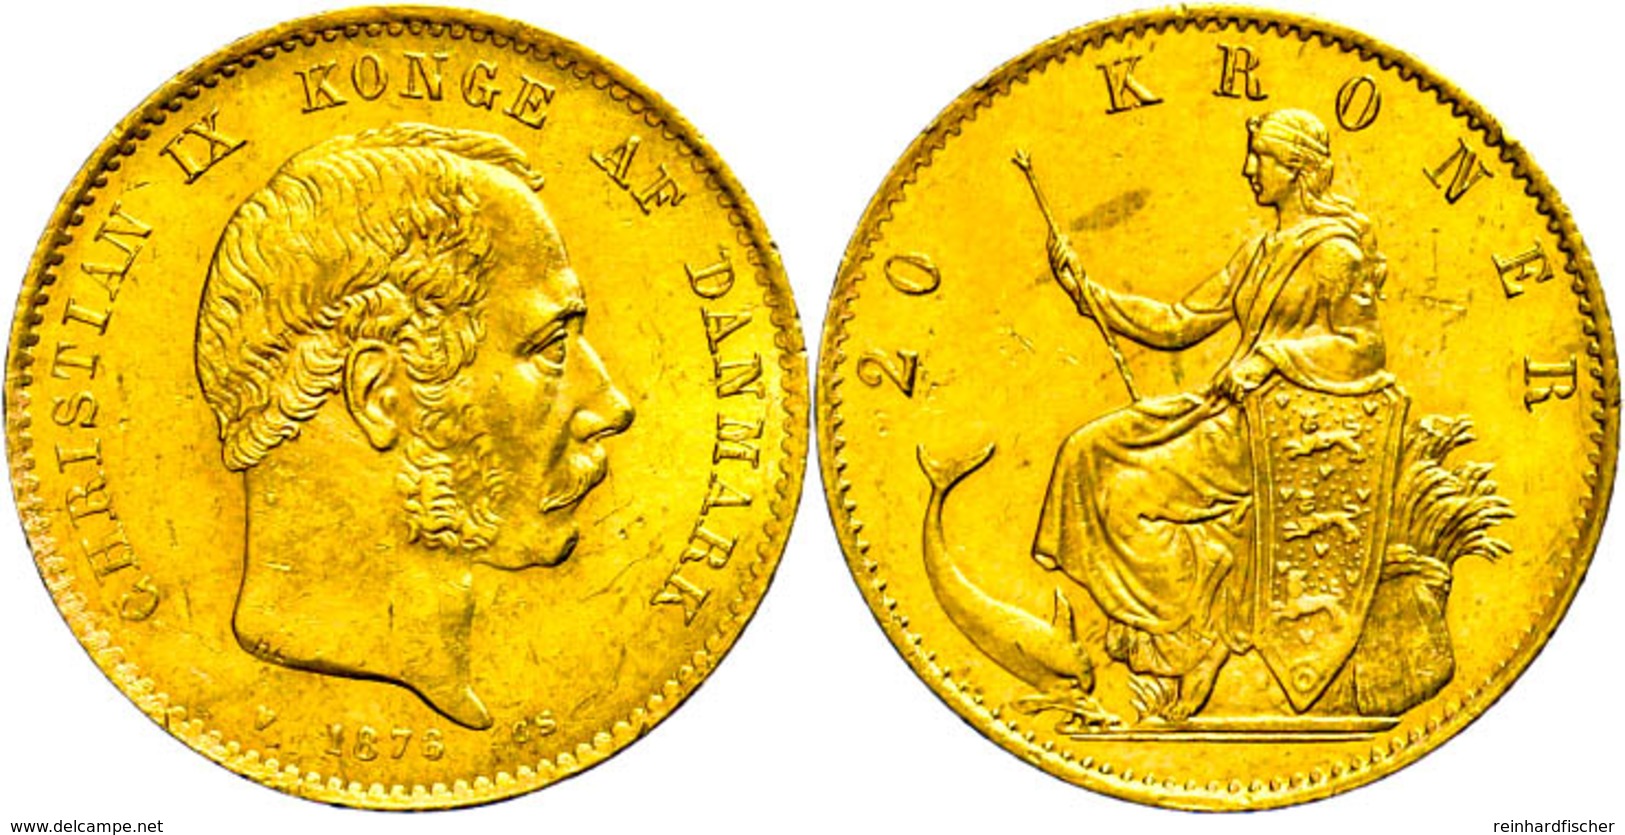 20 Kronen, Gold, 1876, Christian IX., Fb. 295, Kl. Kratzer, Kl. Rf., Ss-vz.  Ss-vz - Denmark